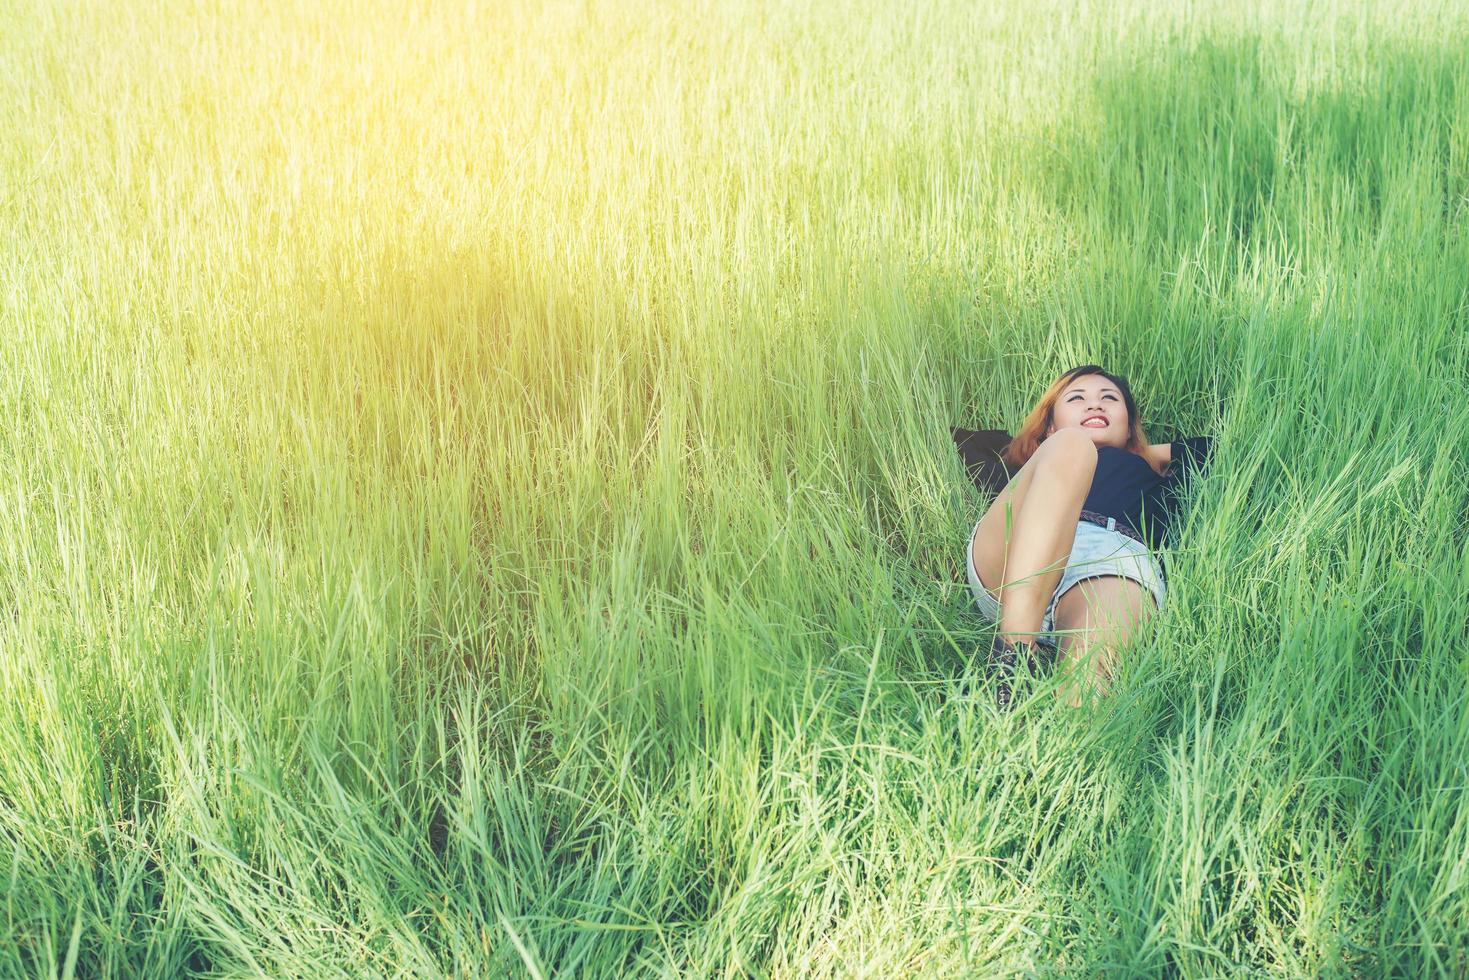 belle jeune femme allongée sur l'herbe verte profitant de la vie et heureuse photo